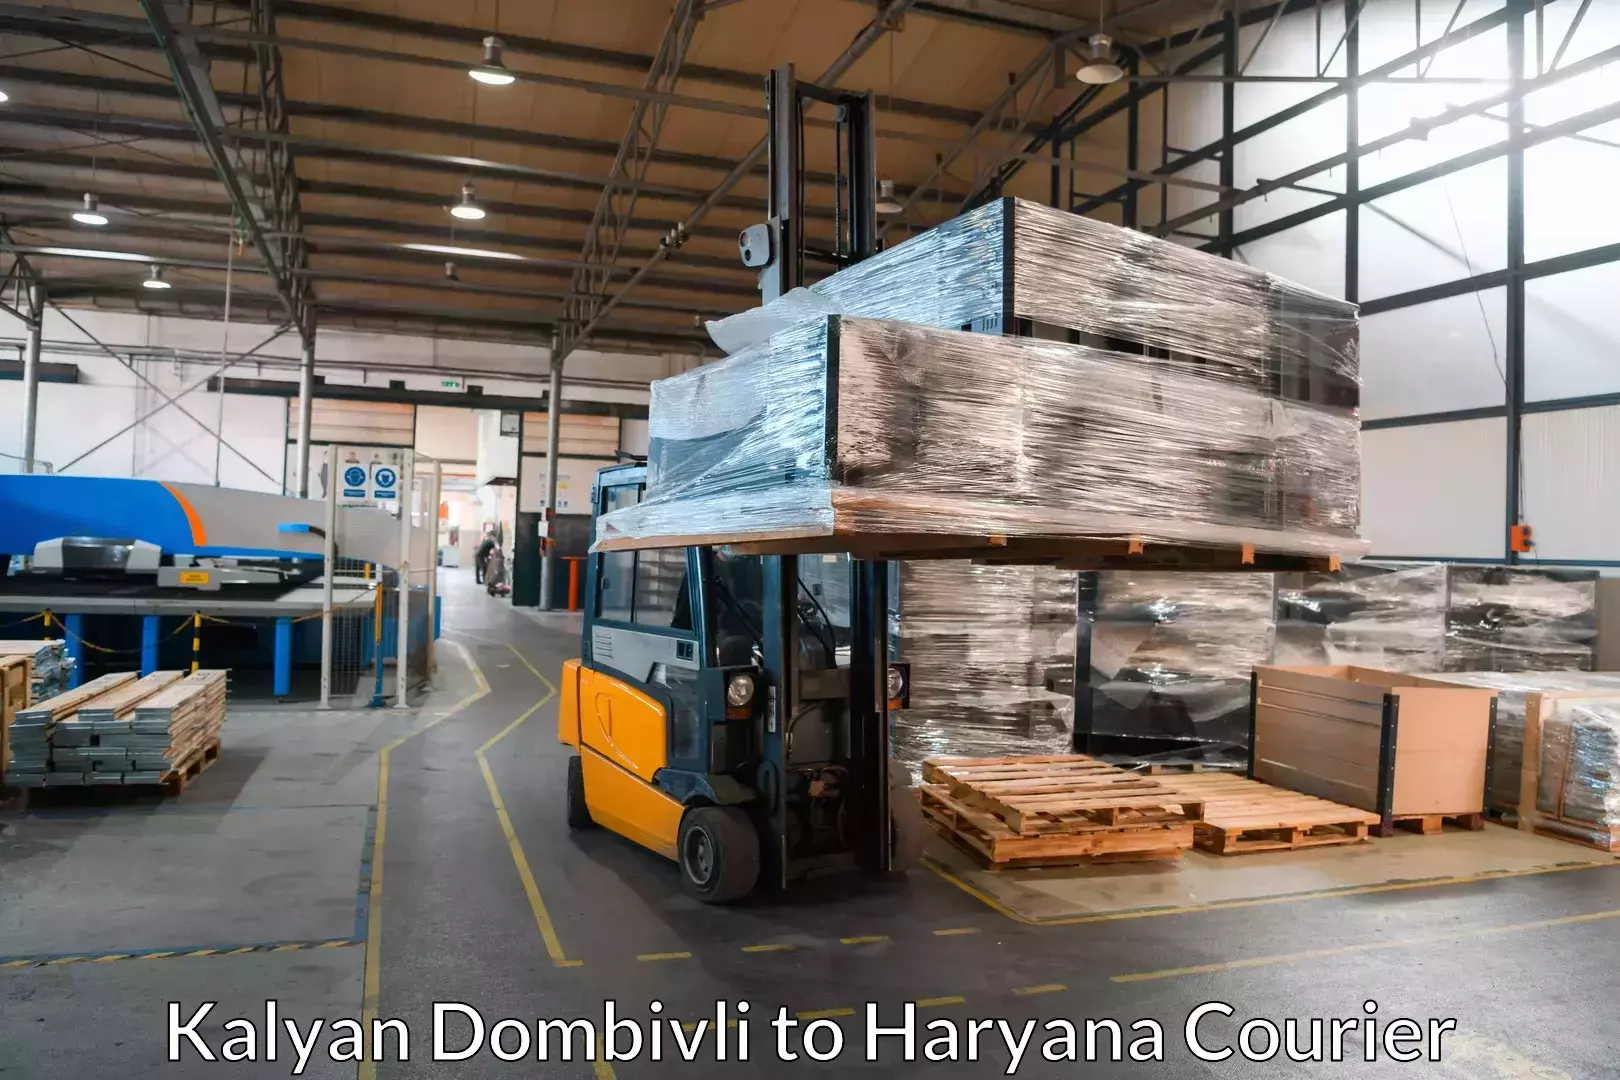 Efficient moving company Kalyan Dombivli to Haryana